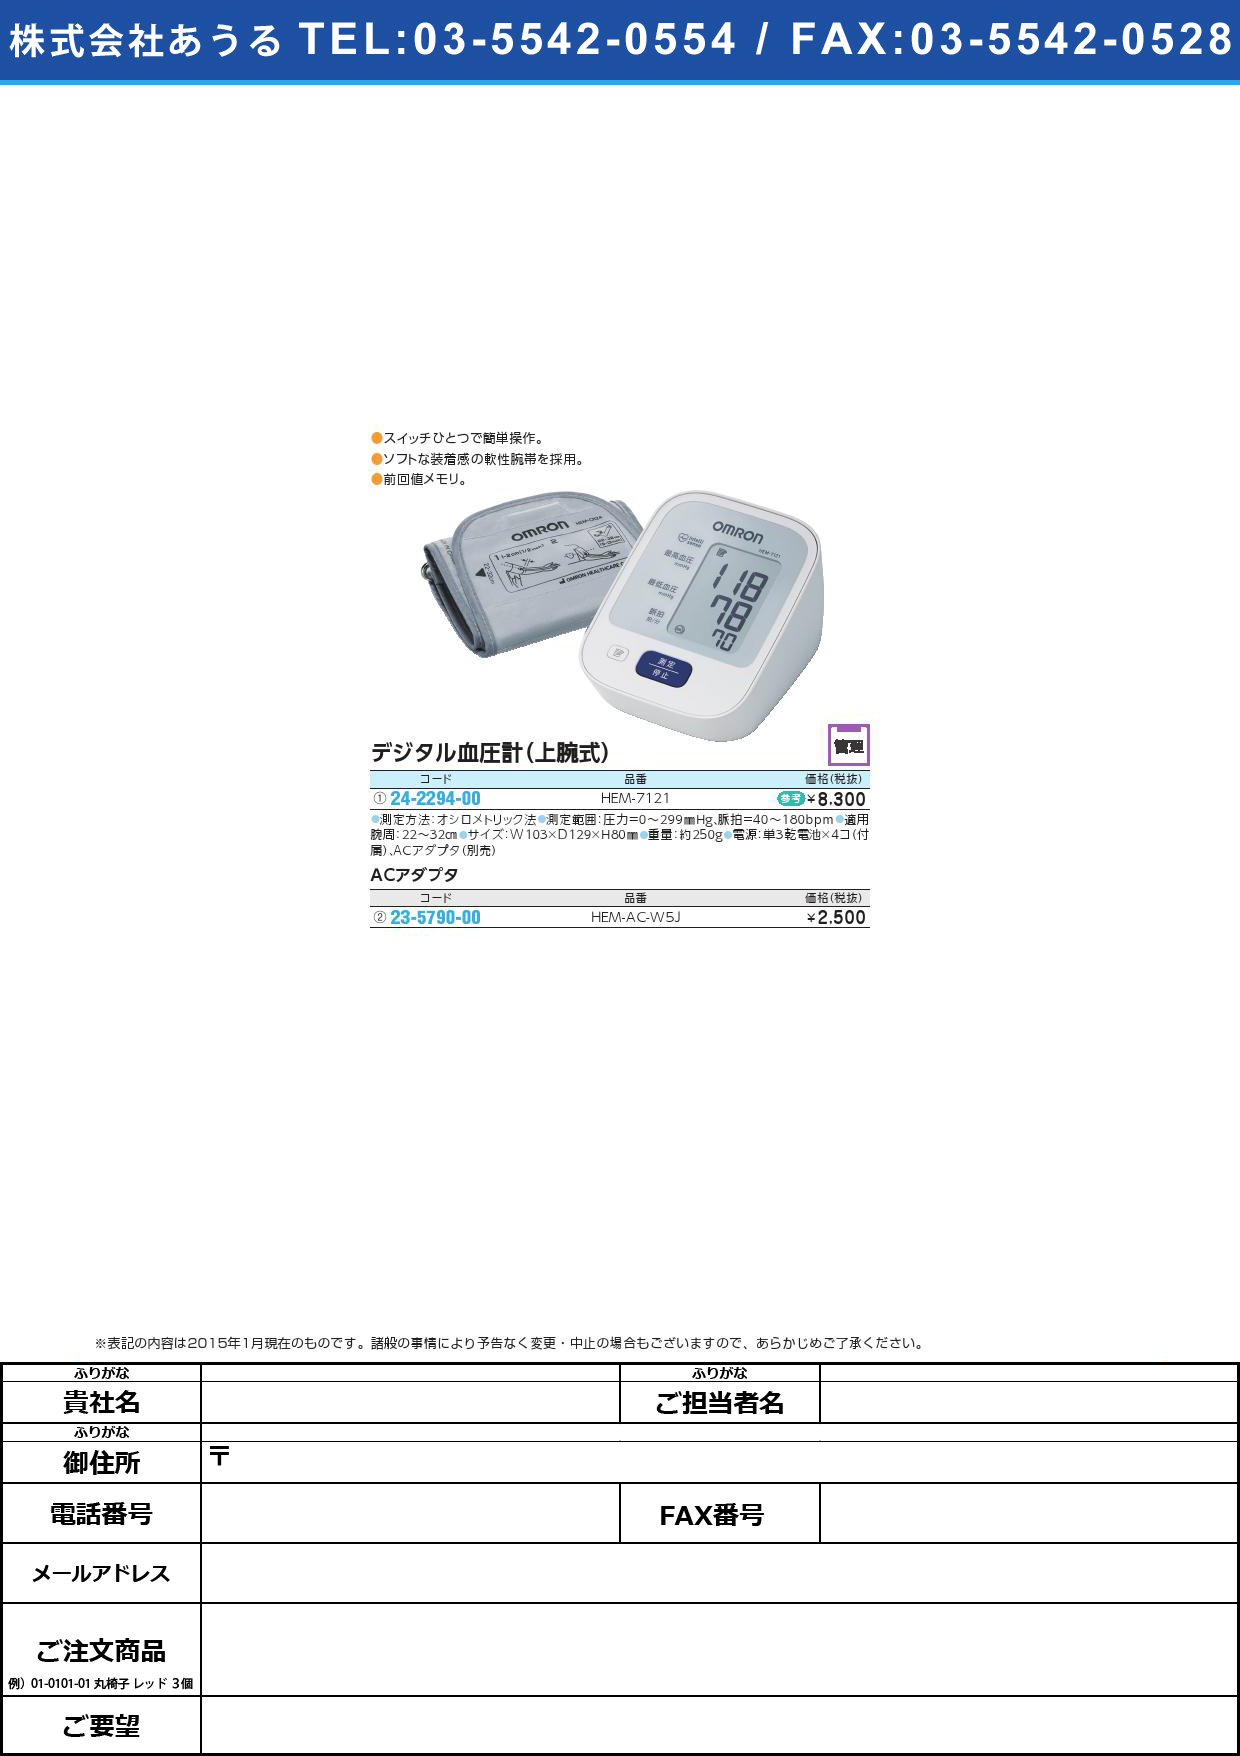 (24-2294-00)デジタル自動血圧計 ﾃﾞｼﾞﾀﾙｼﾞﾄﾞｳｹﾂｱﾂｹｲ(24-2294-00)HEM-7121【1台単位】【2015年カタログ商品】